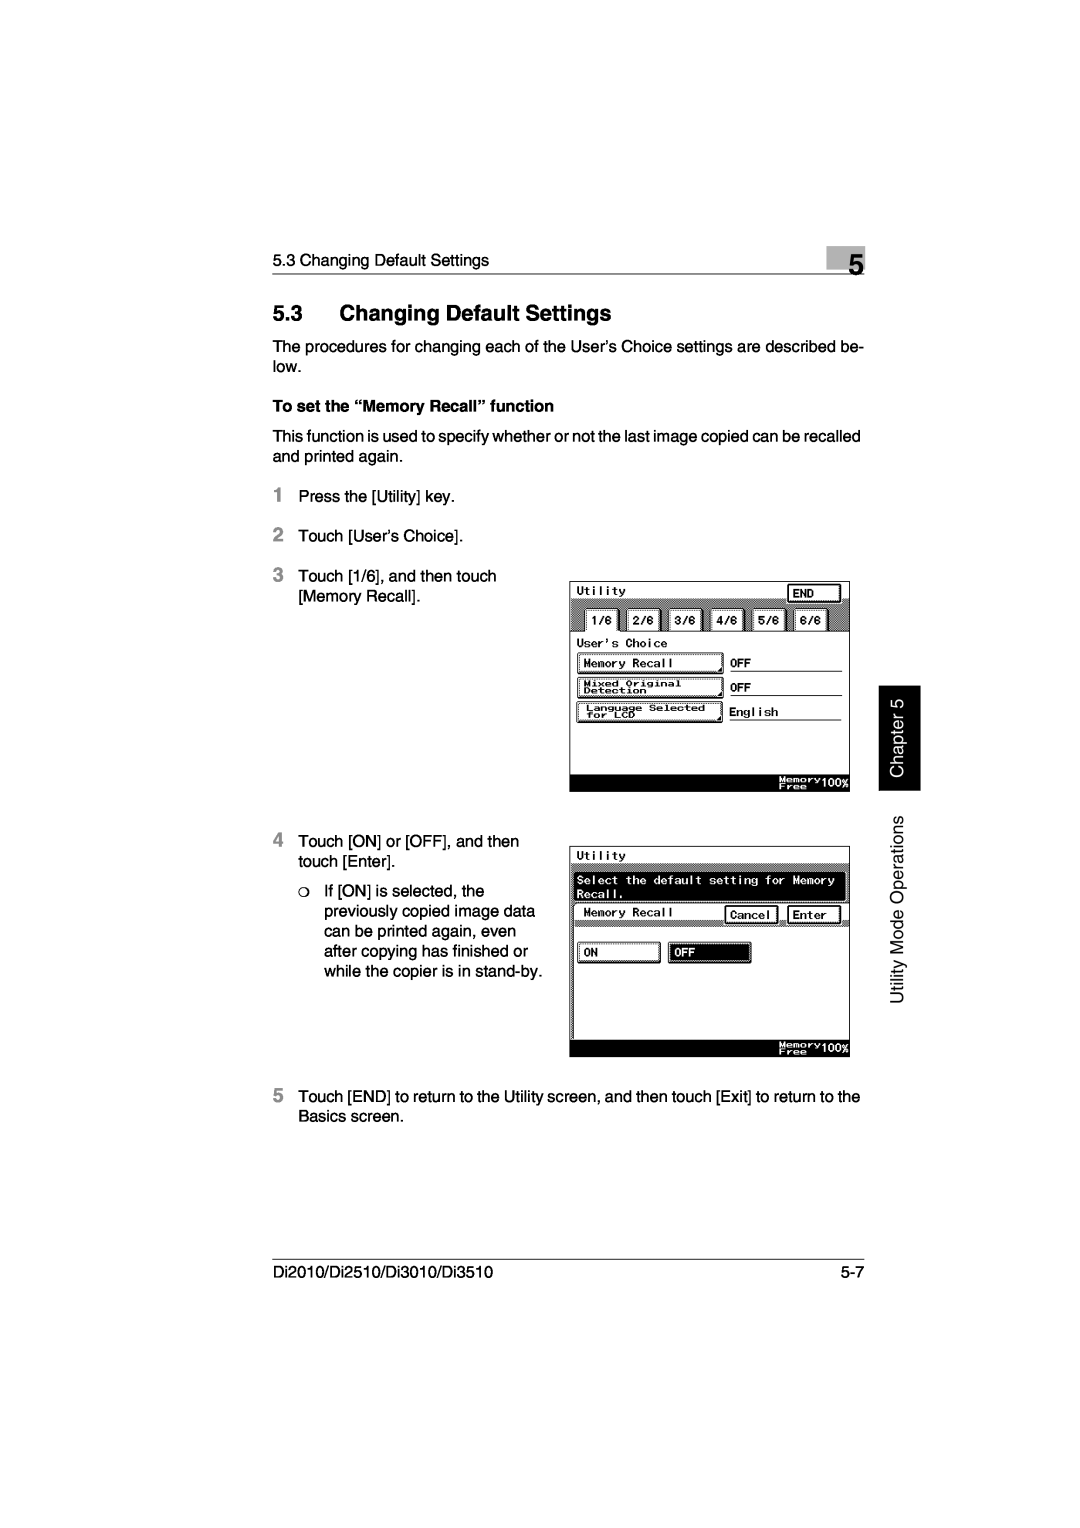 Minolta DI2510, DI2010, DI3010, Di3510 user manual Changing Default Settings, Utility Mode Operations, Chapter 